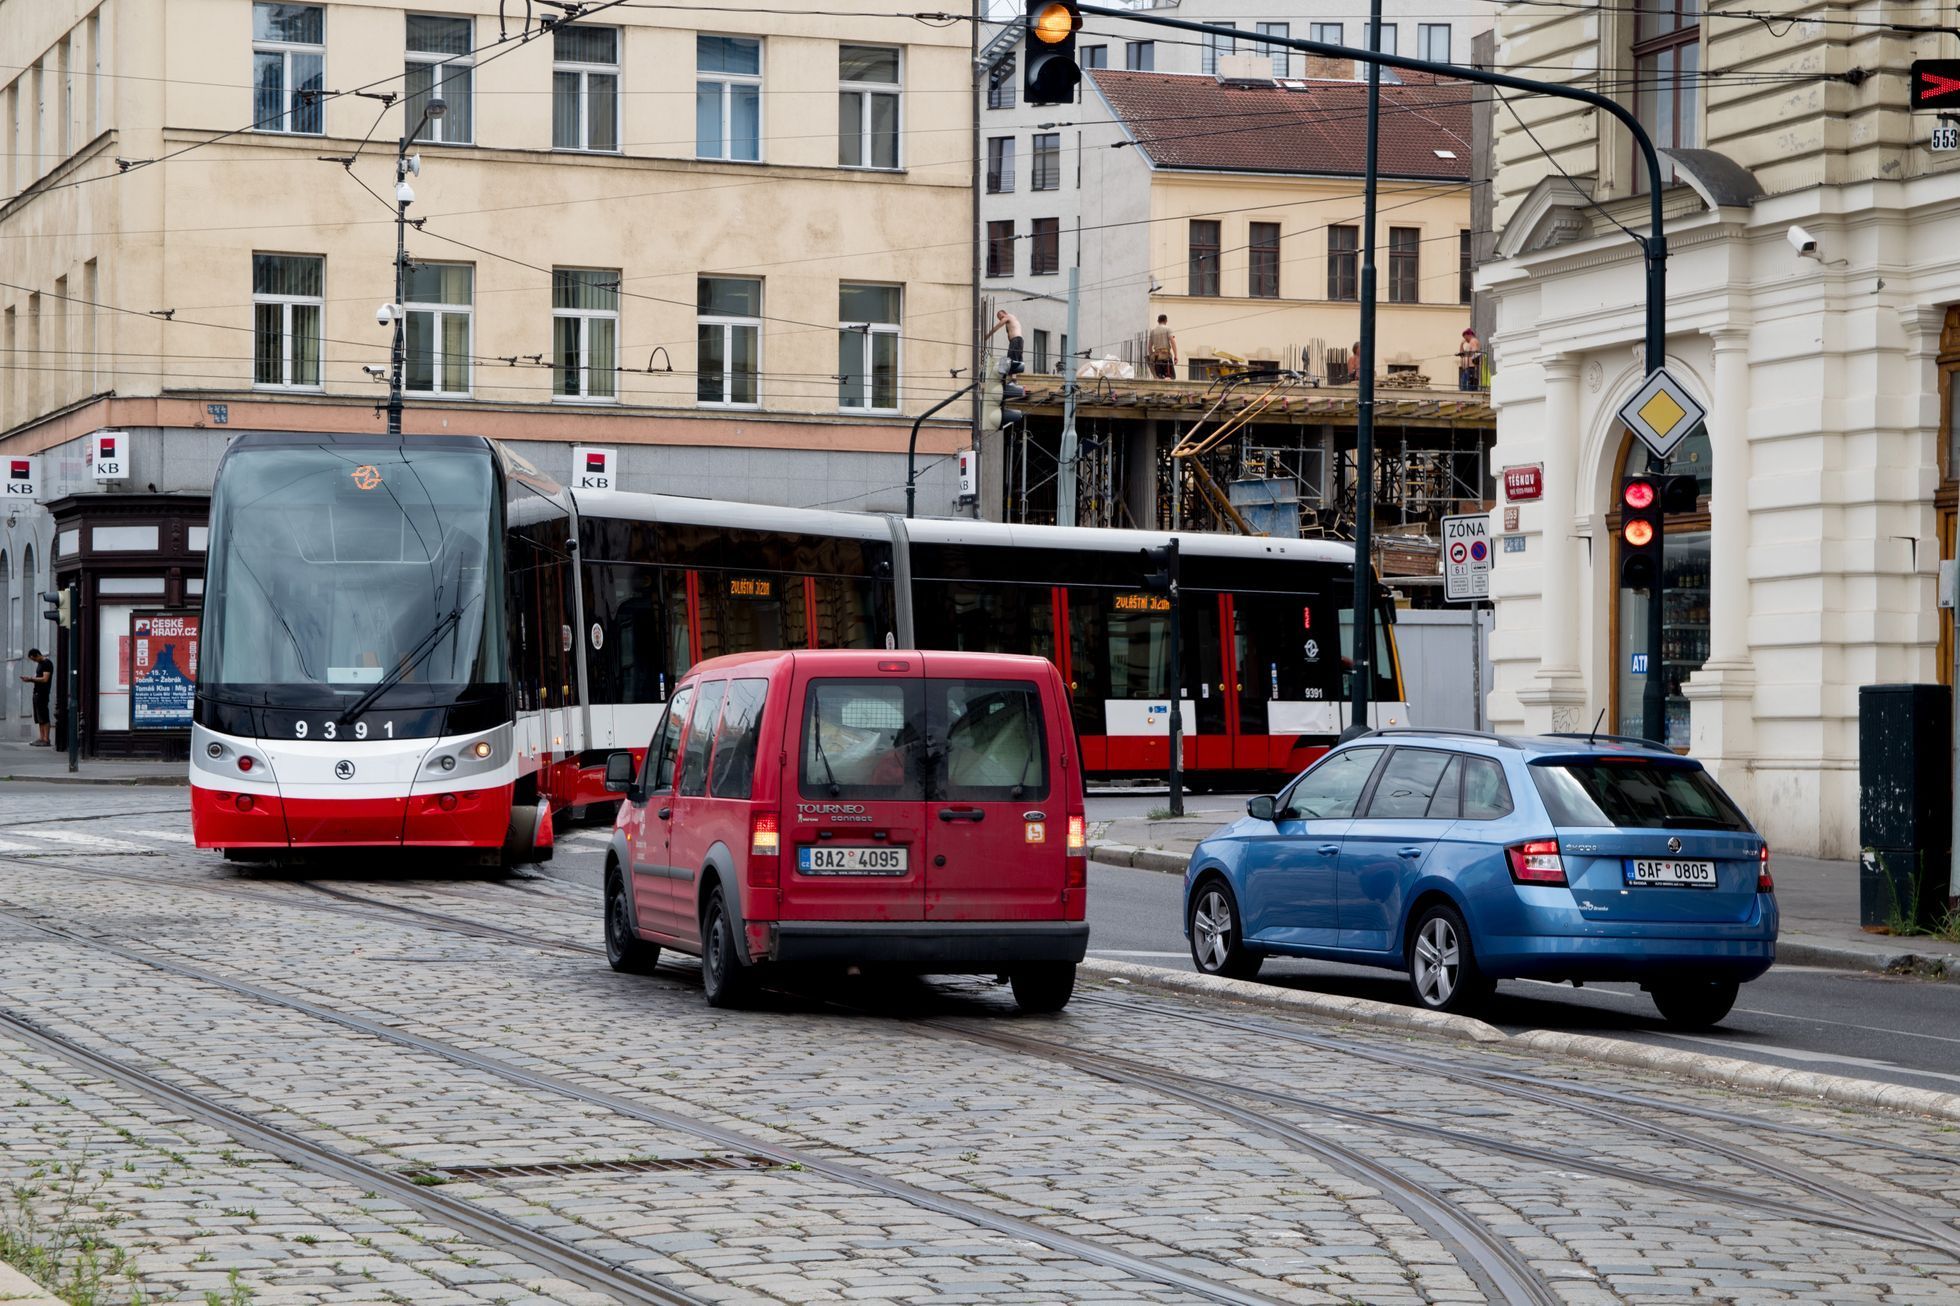 Dopravní podnik pojmenovává své tramvaje